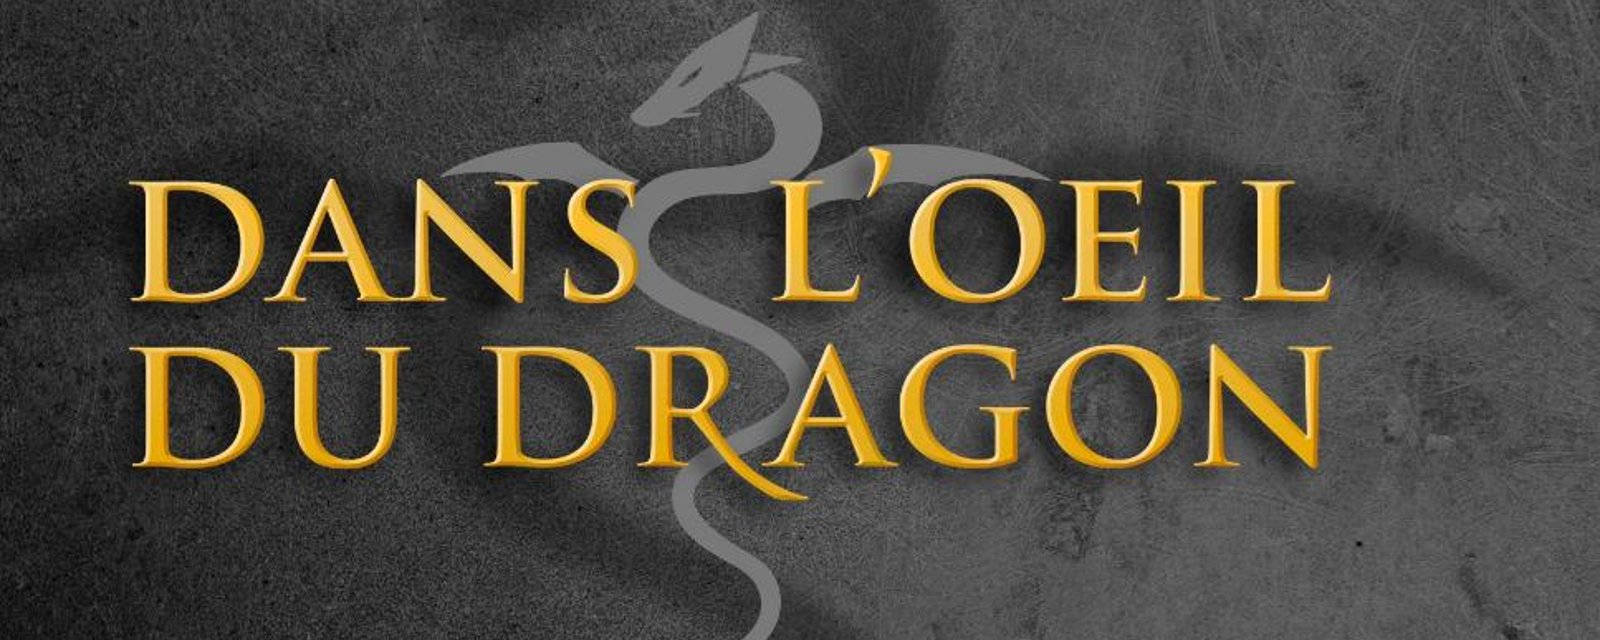 Nouveau développement majeur concernant l'émission Dans l'oeil du dragon